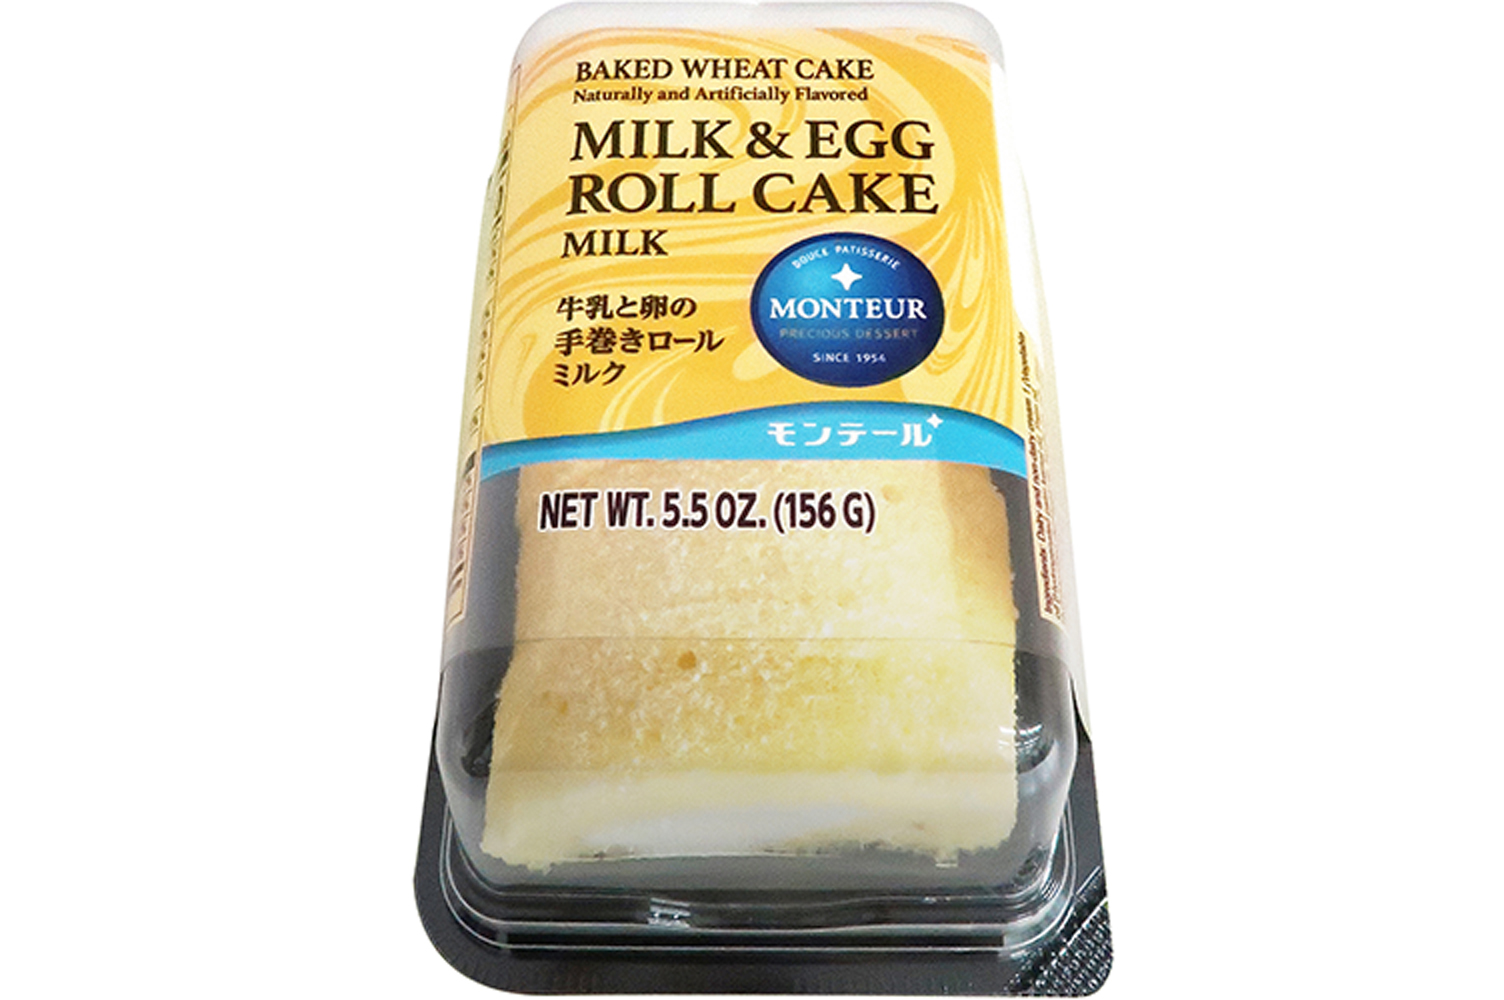 MILK & EGG ROLL CAKE MILK